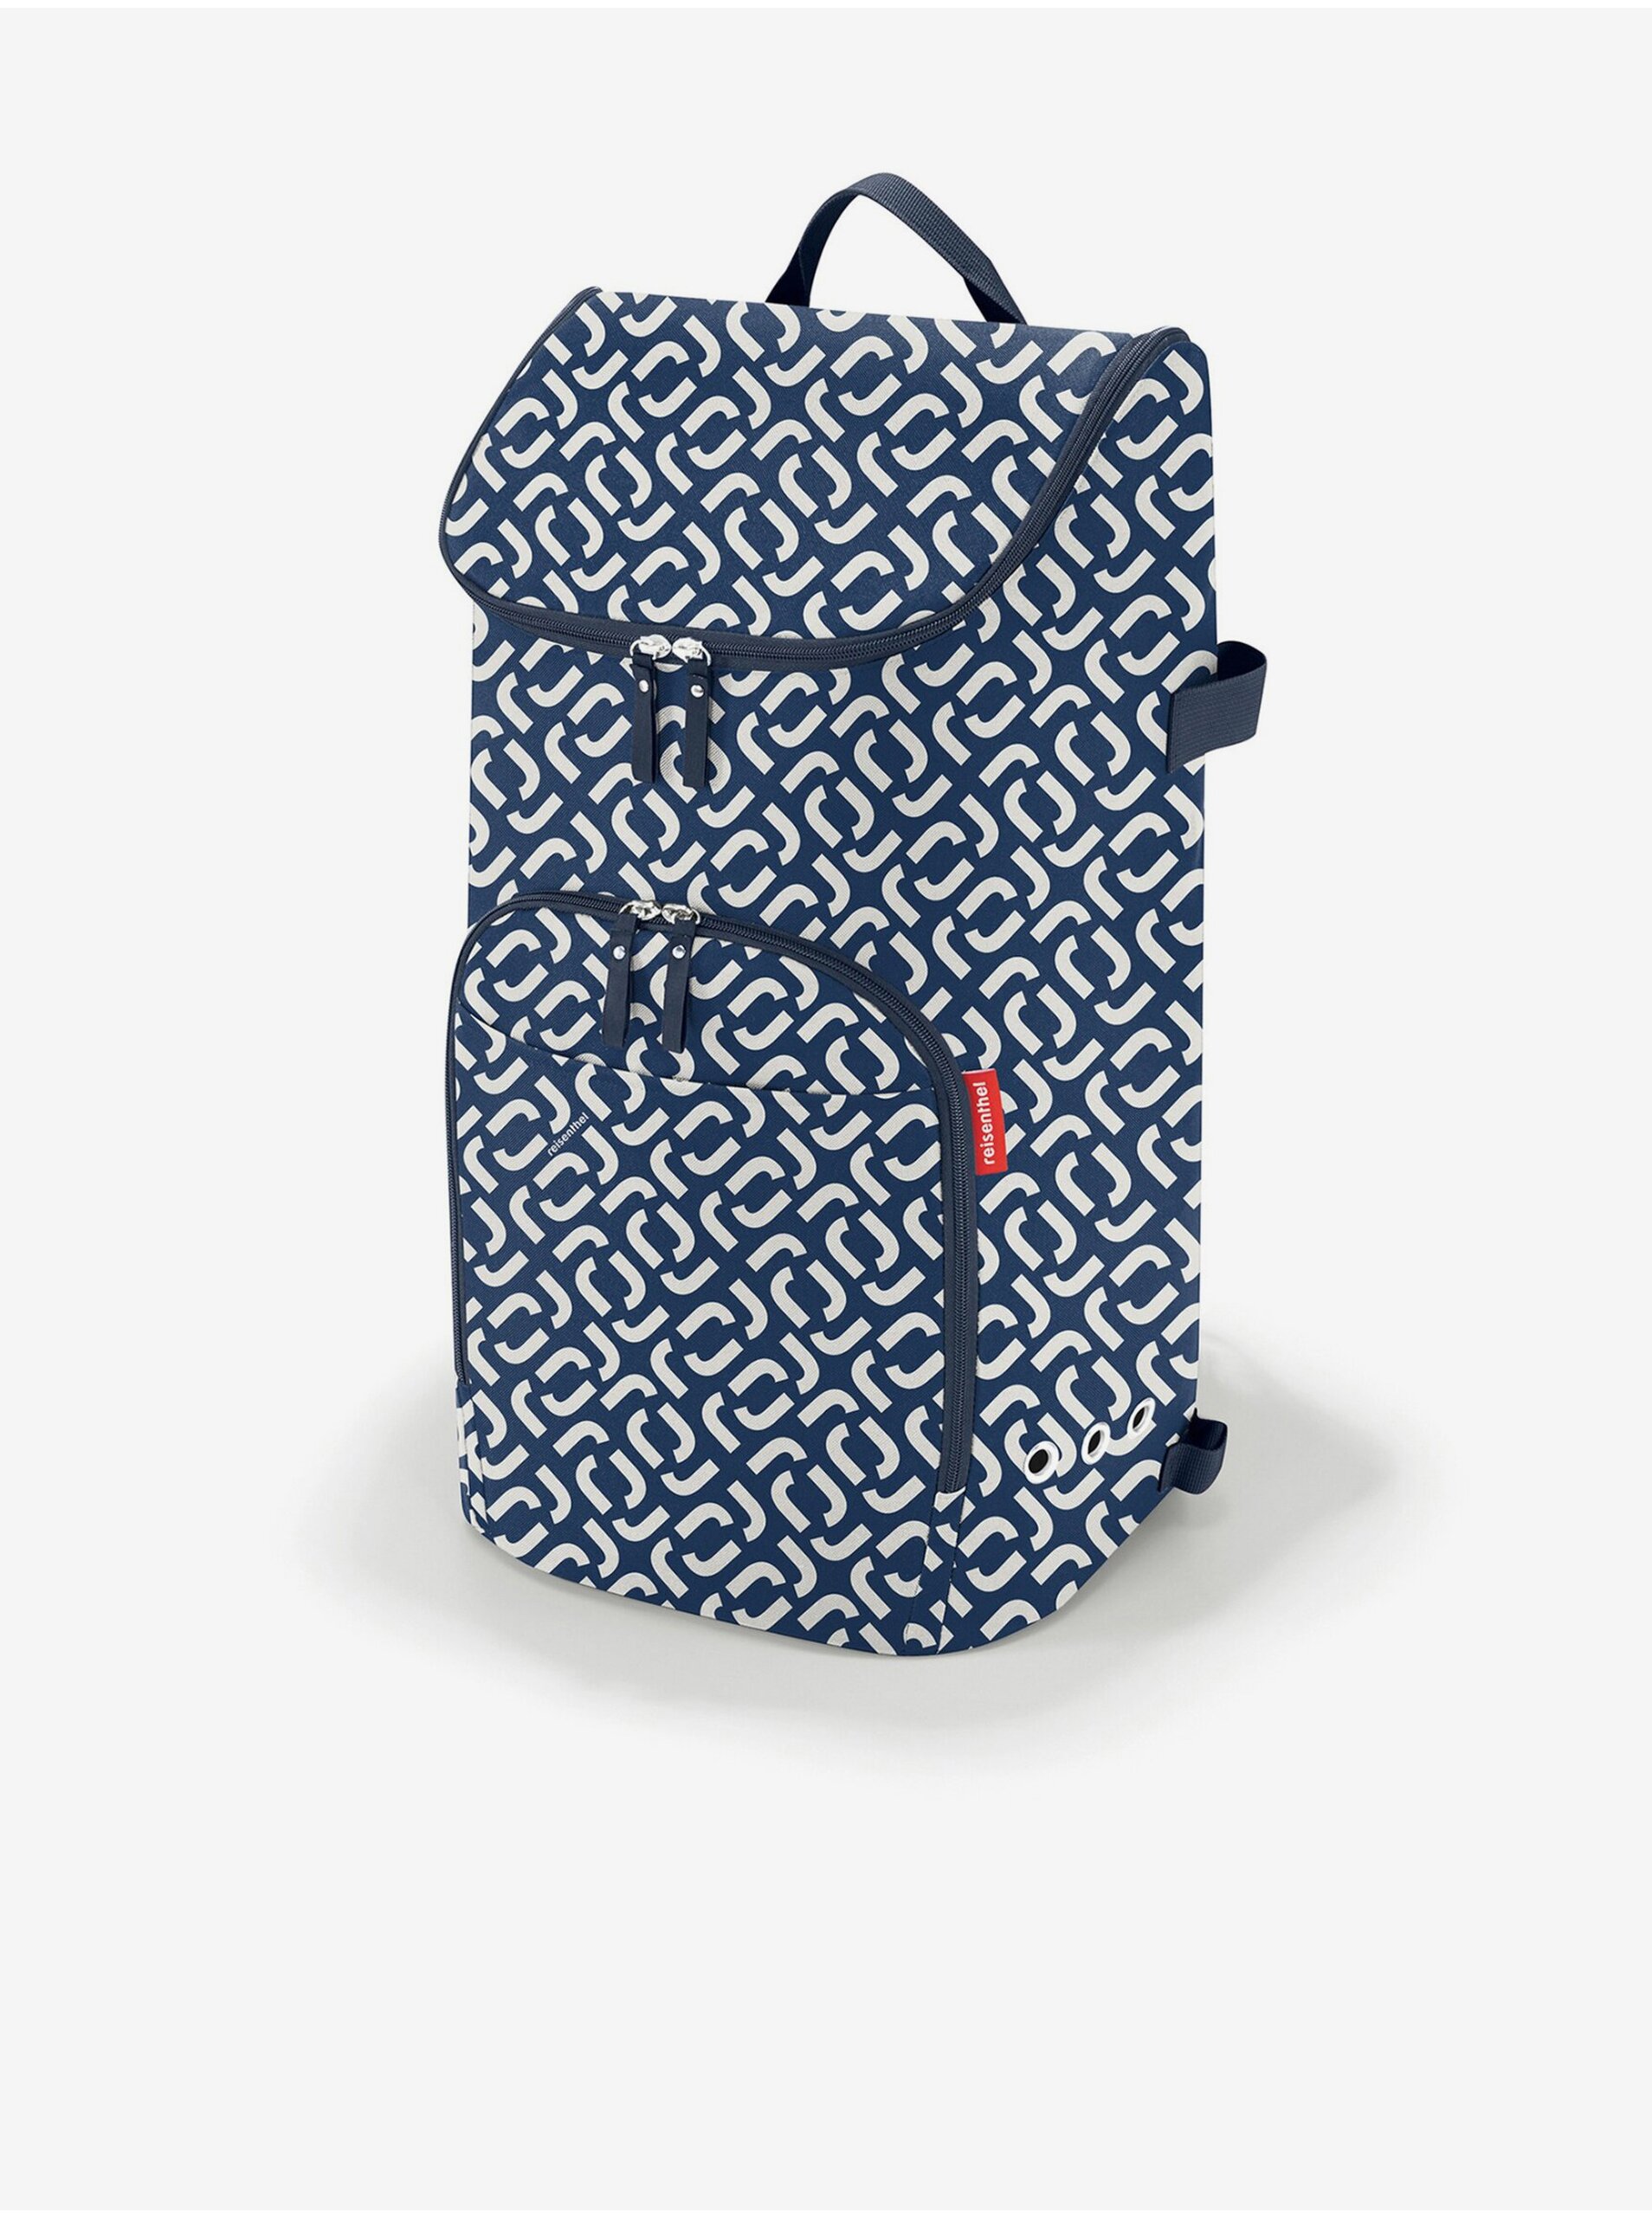 E-shop Bílo-modrá vzorovaná nákupní taška Reisenthel Citycruiser Bag Signature Navy